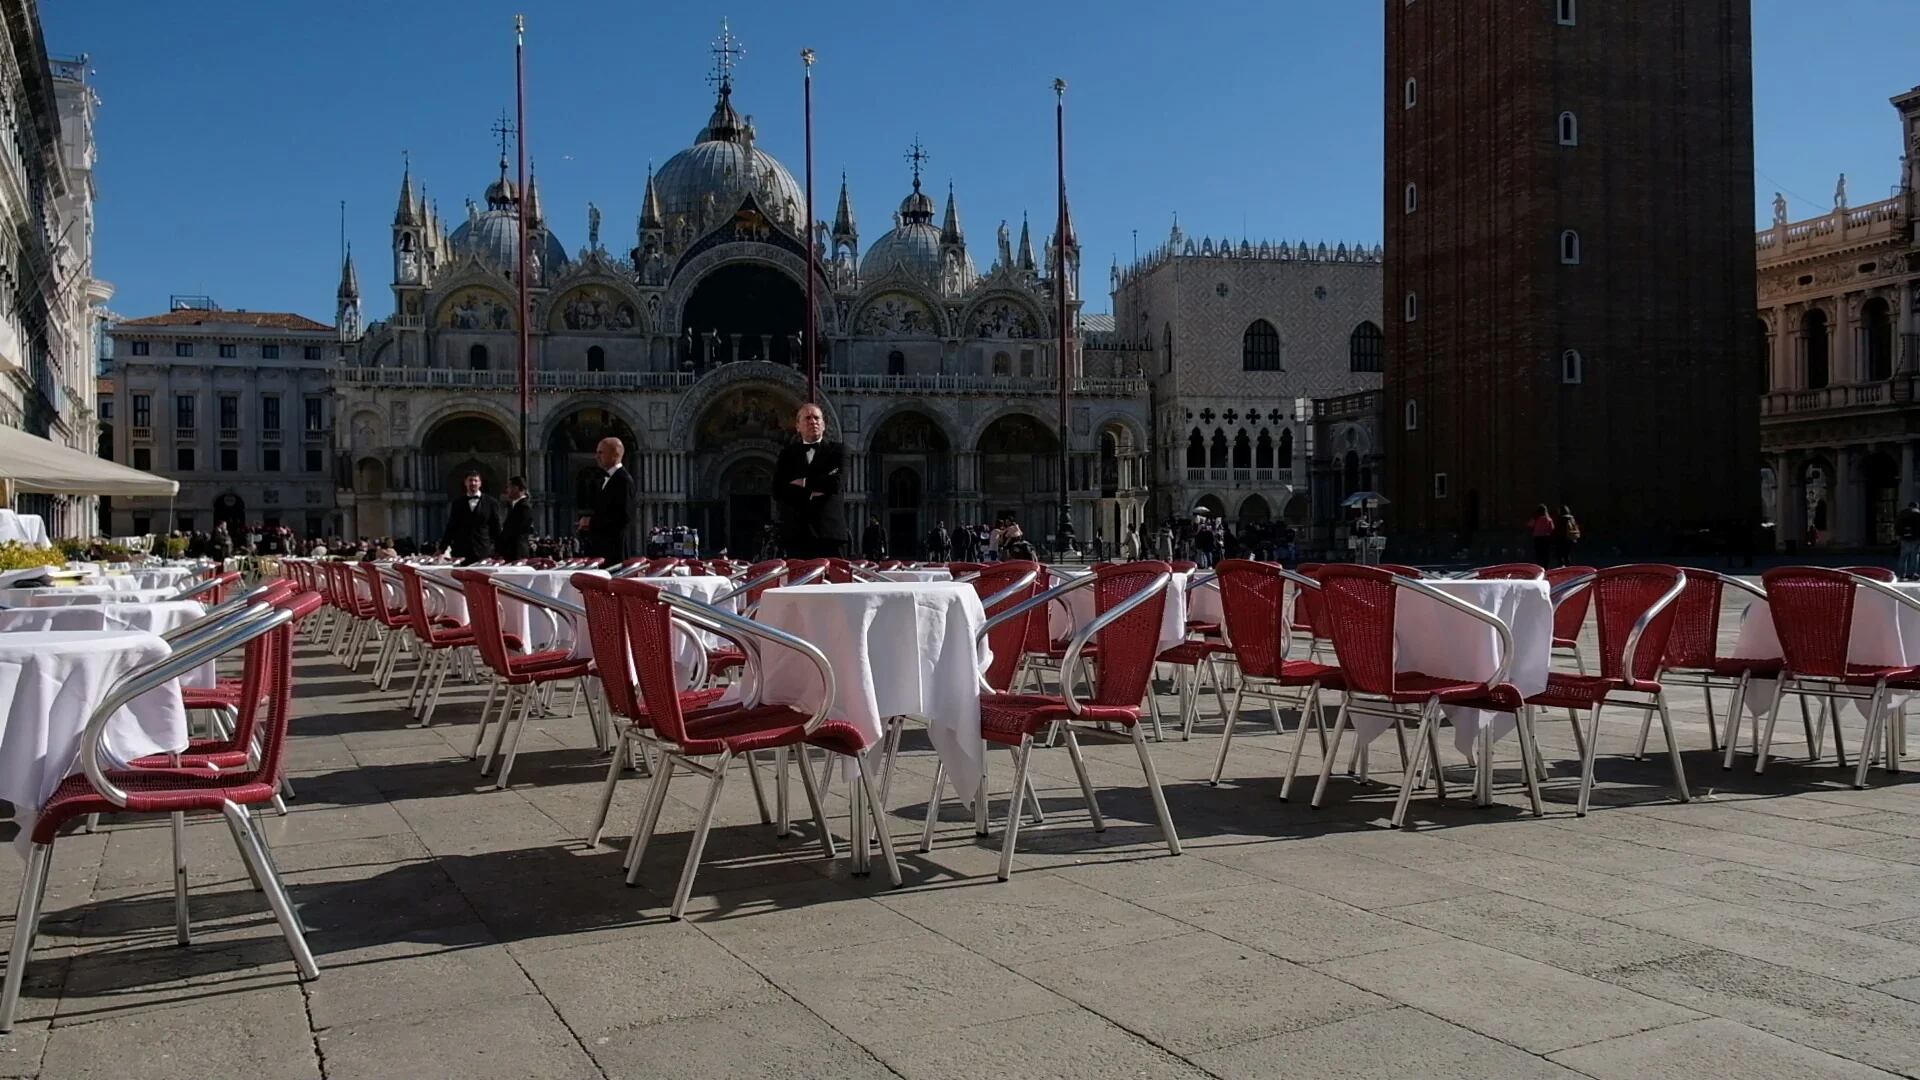 La Plaza San Marcos, en Venecia, vacía debido al avance del coronavirus en Italia (Reuters/ Manuel Silvestri)